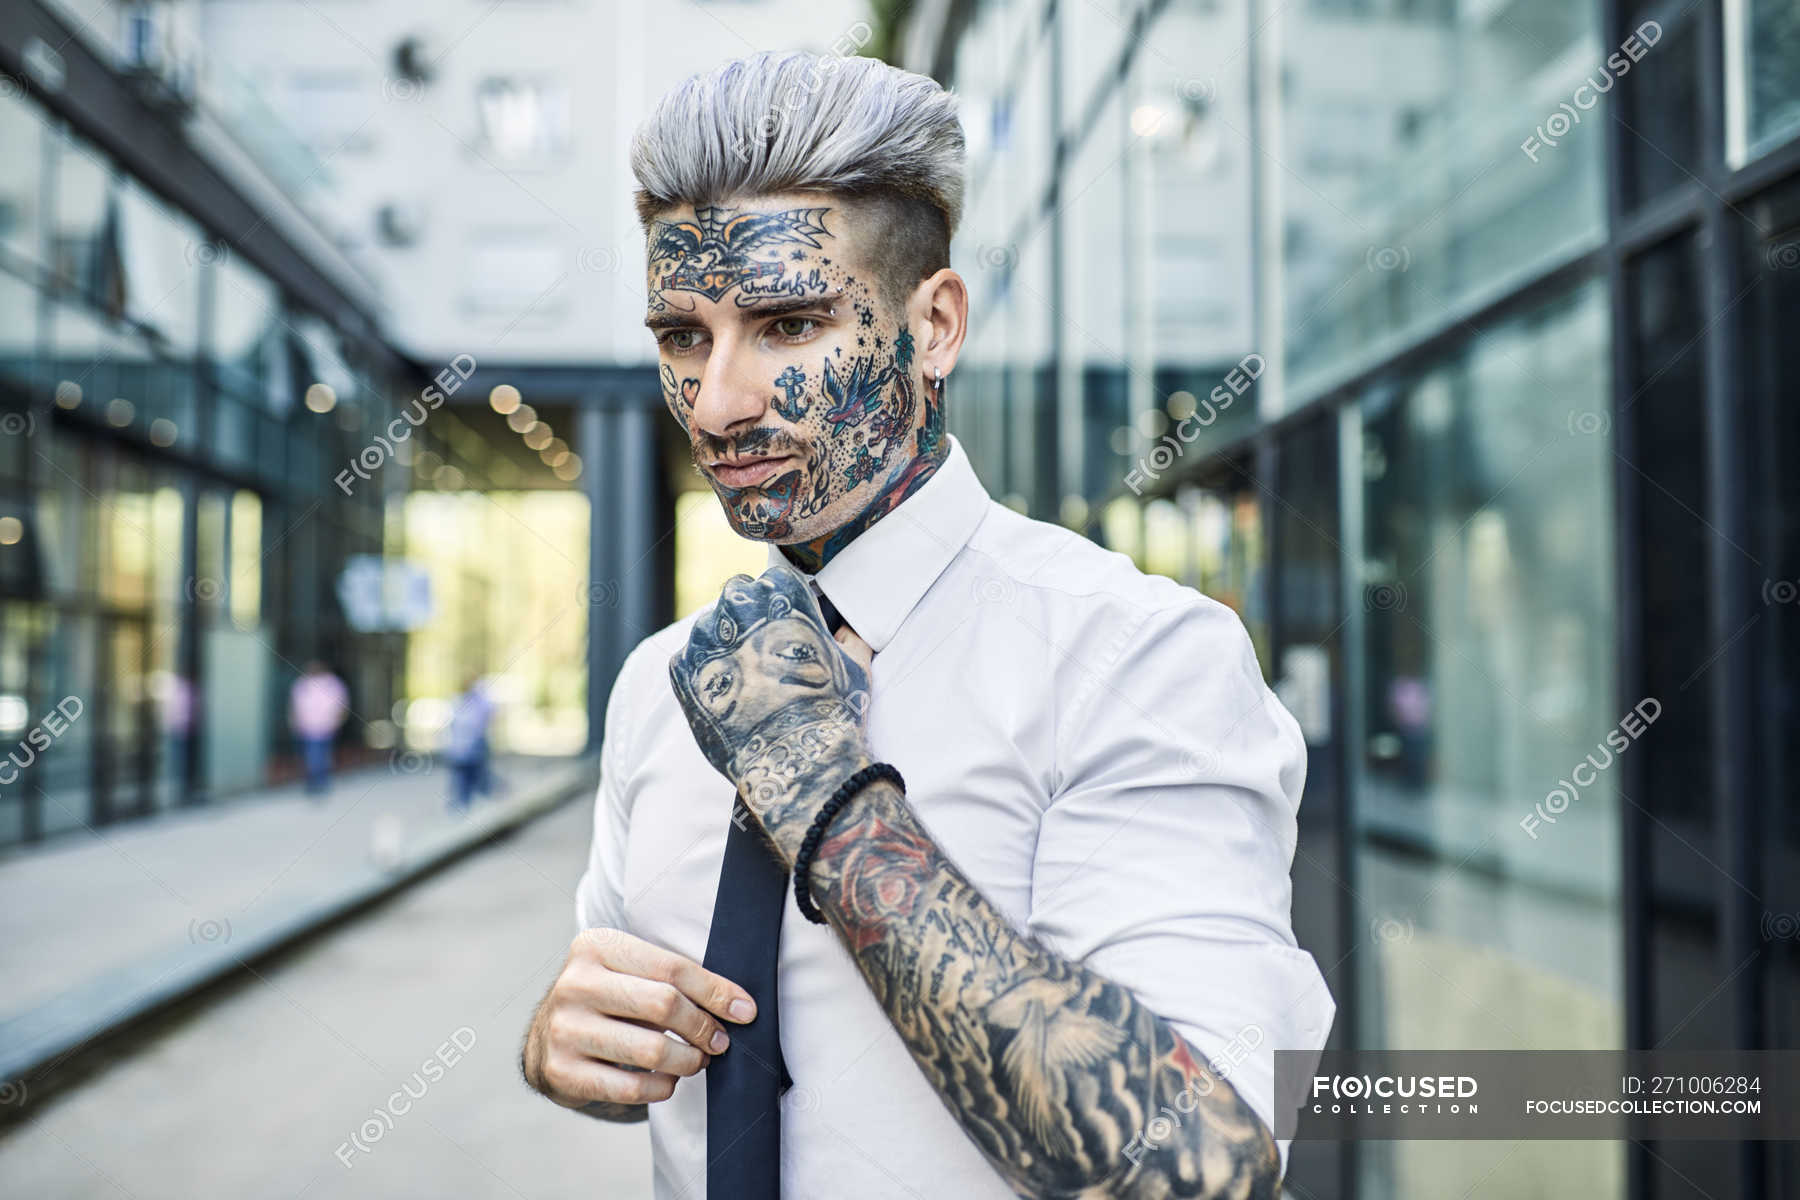 Jeune homme d'affaires avec visage tatoué, attache — Caucasien, grave -  Stock Photo | #271006284